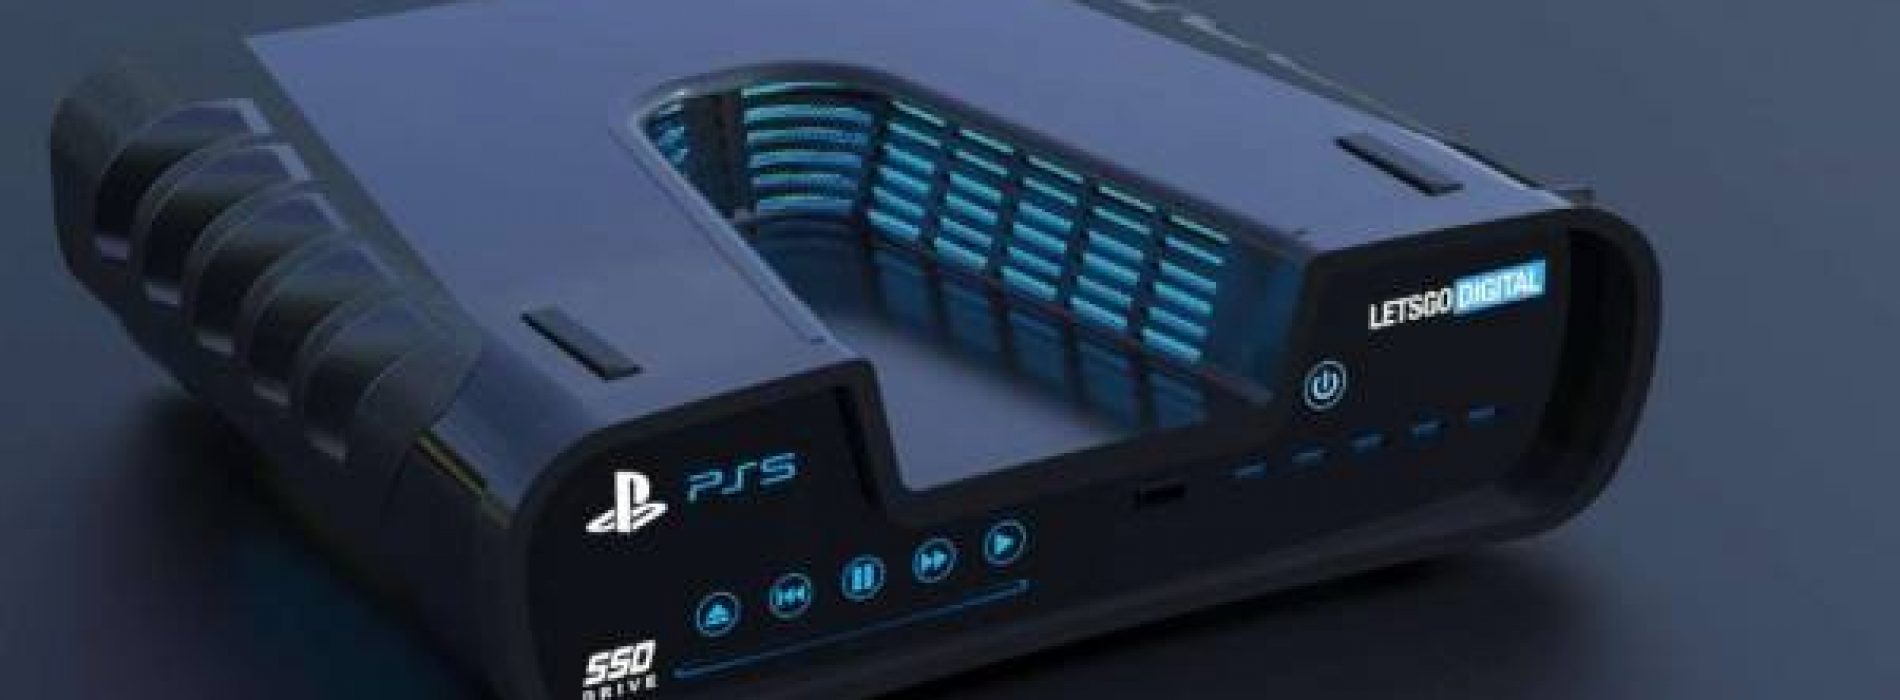 La PlayStation 5 se lanzará a fines de 2020, según confirma Sony